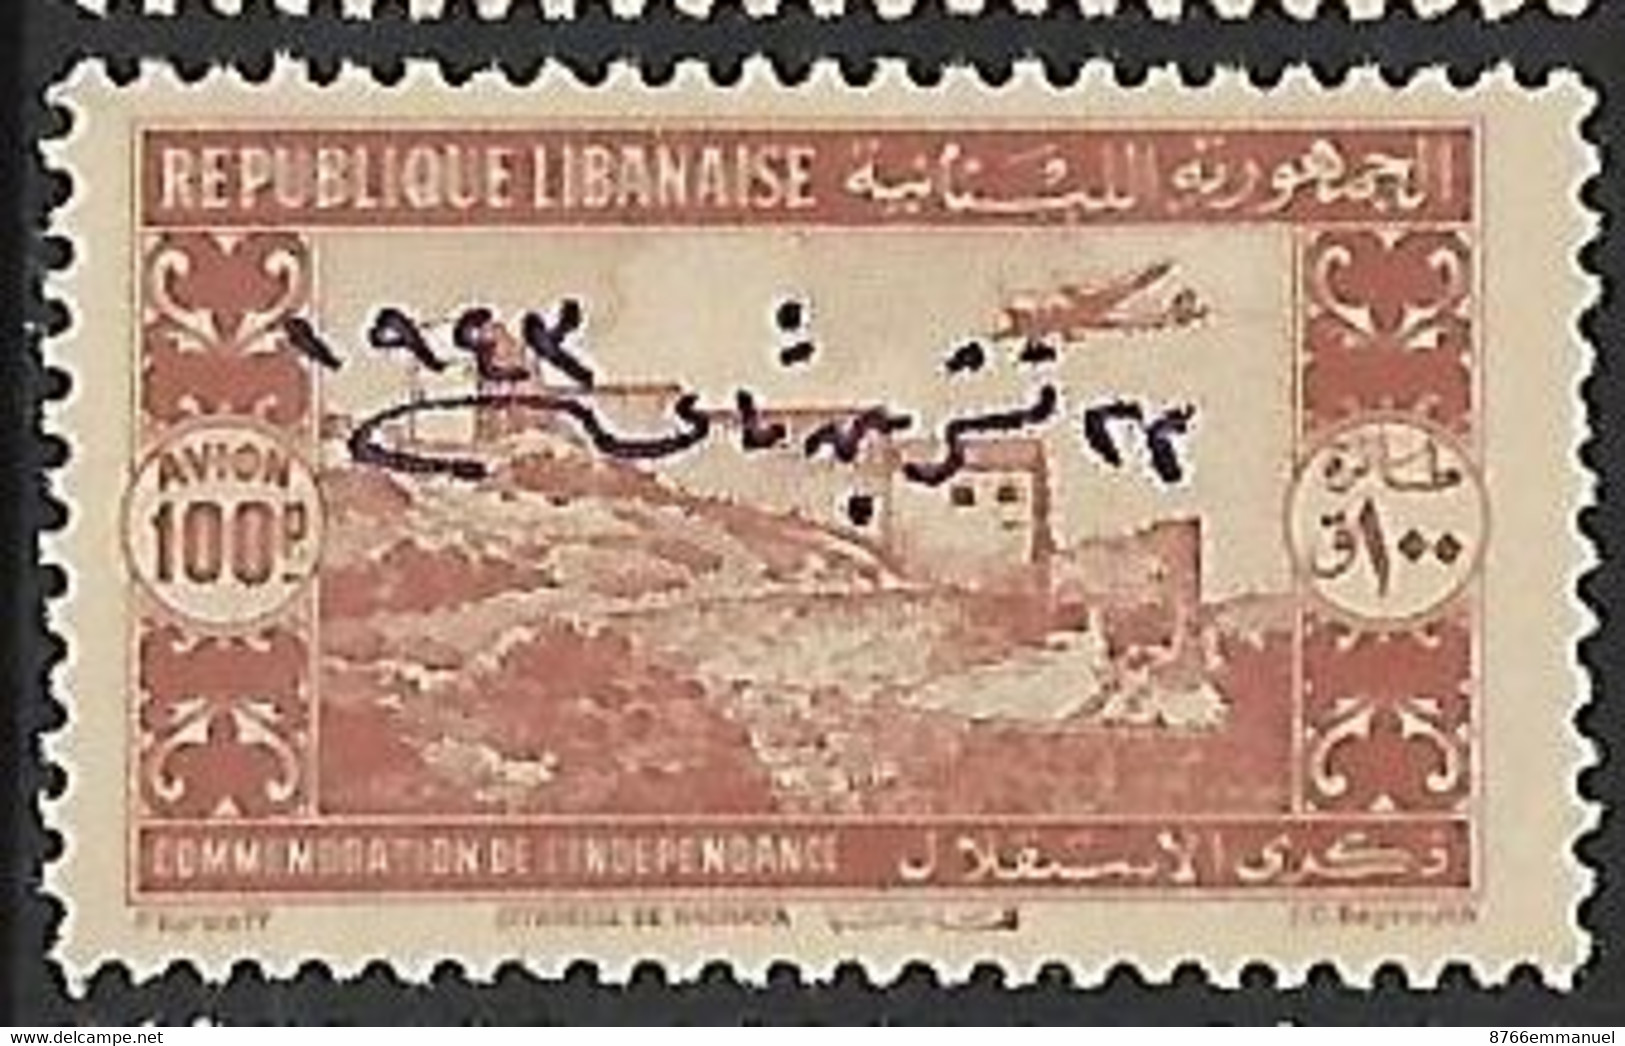 GRAND LIBAN AERIEN N°93 N* - Poste Aérienne